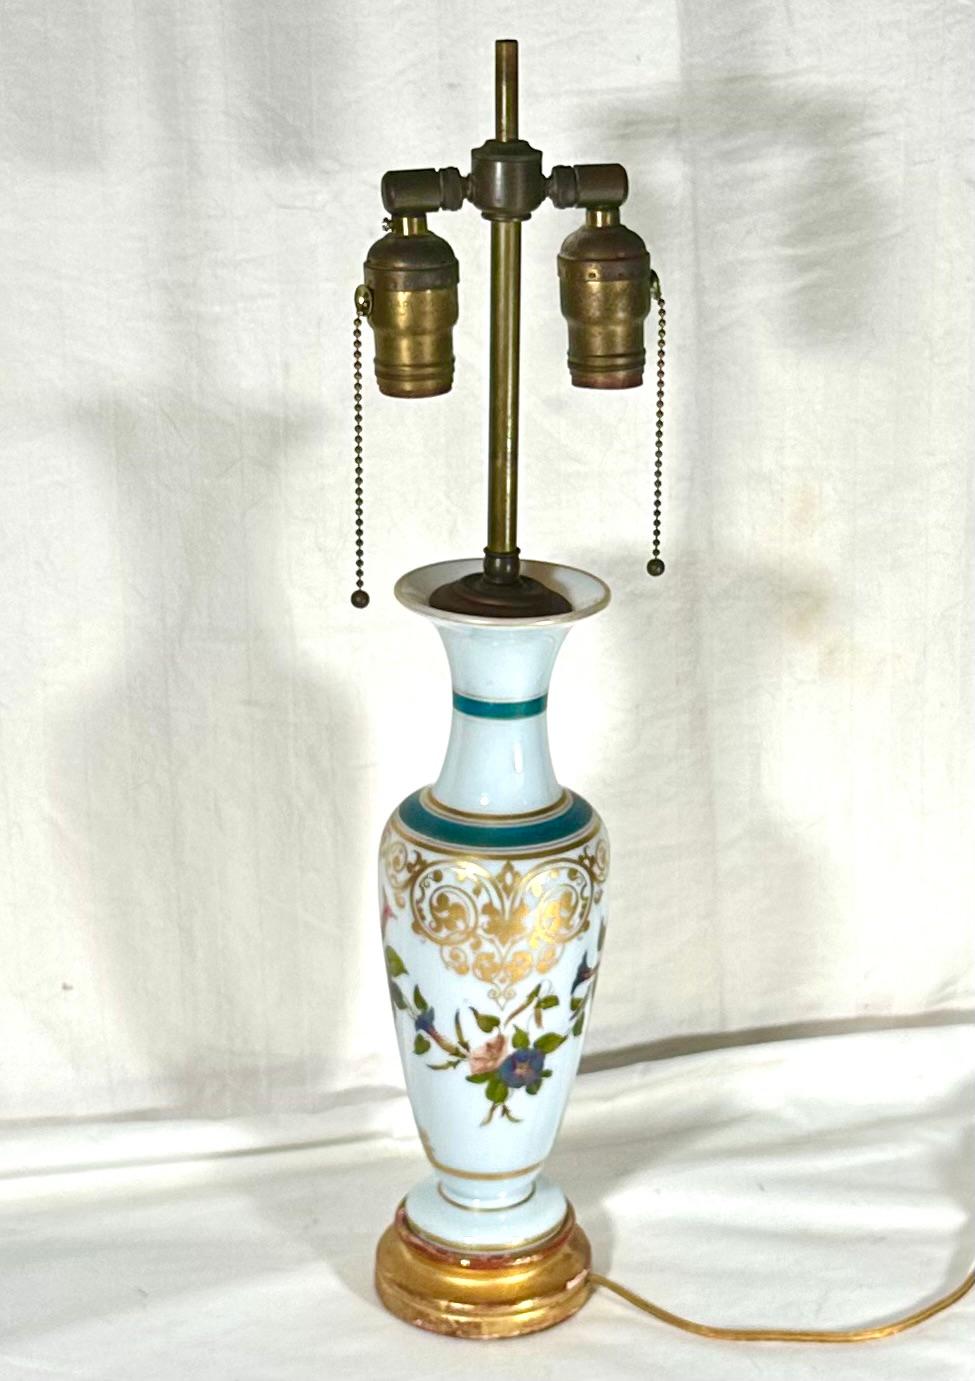 Vase-lampe français en verre opalin blanc Attribué à Baccarat.

Magnifique vase de forme balustre en verre opalin blanc décoré de guirlandes de fleurs colorées. L'épaule est ornée d'arabesques dorées. Le vase est transformé en lampe et est monté sur